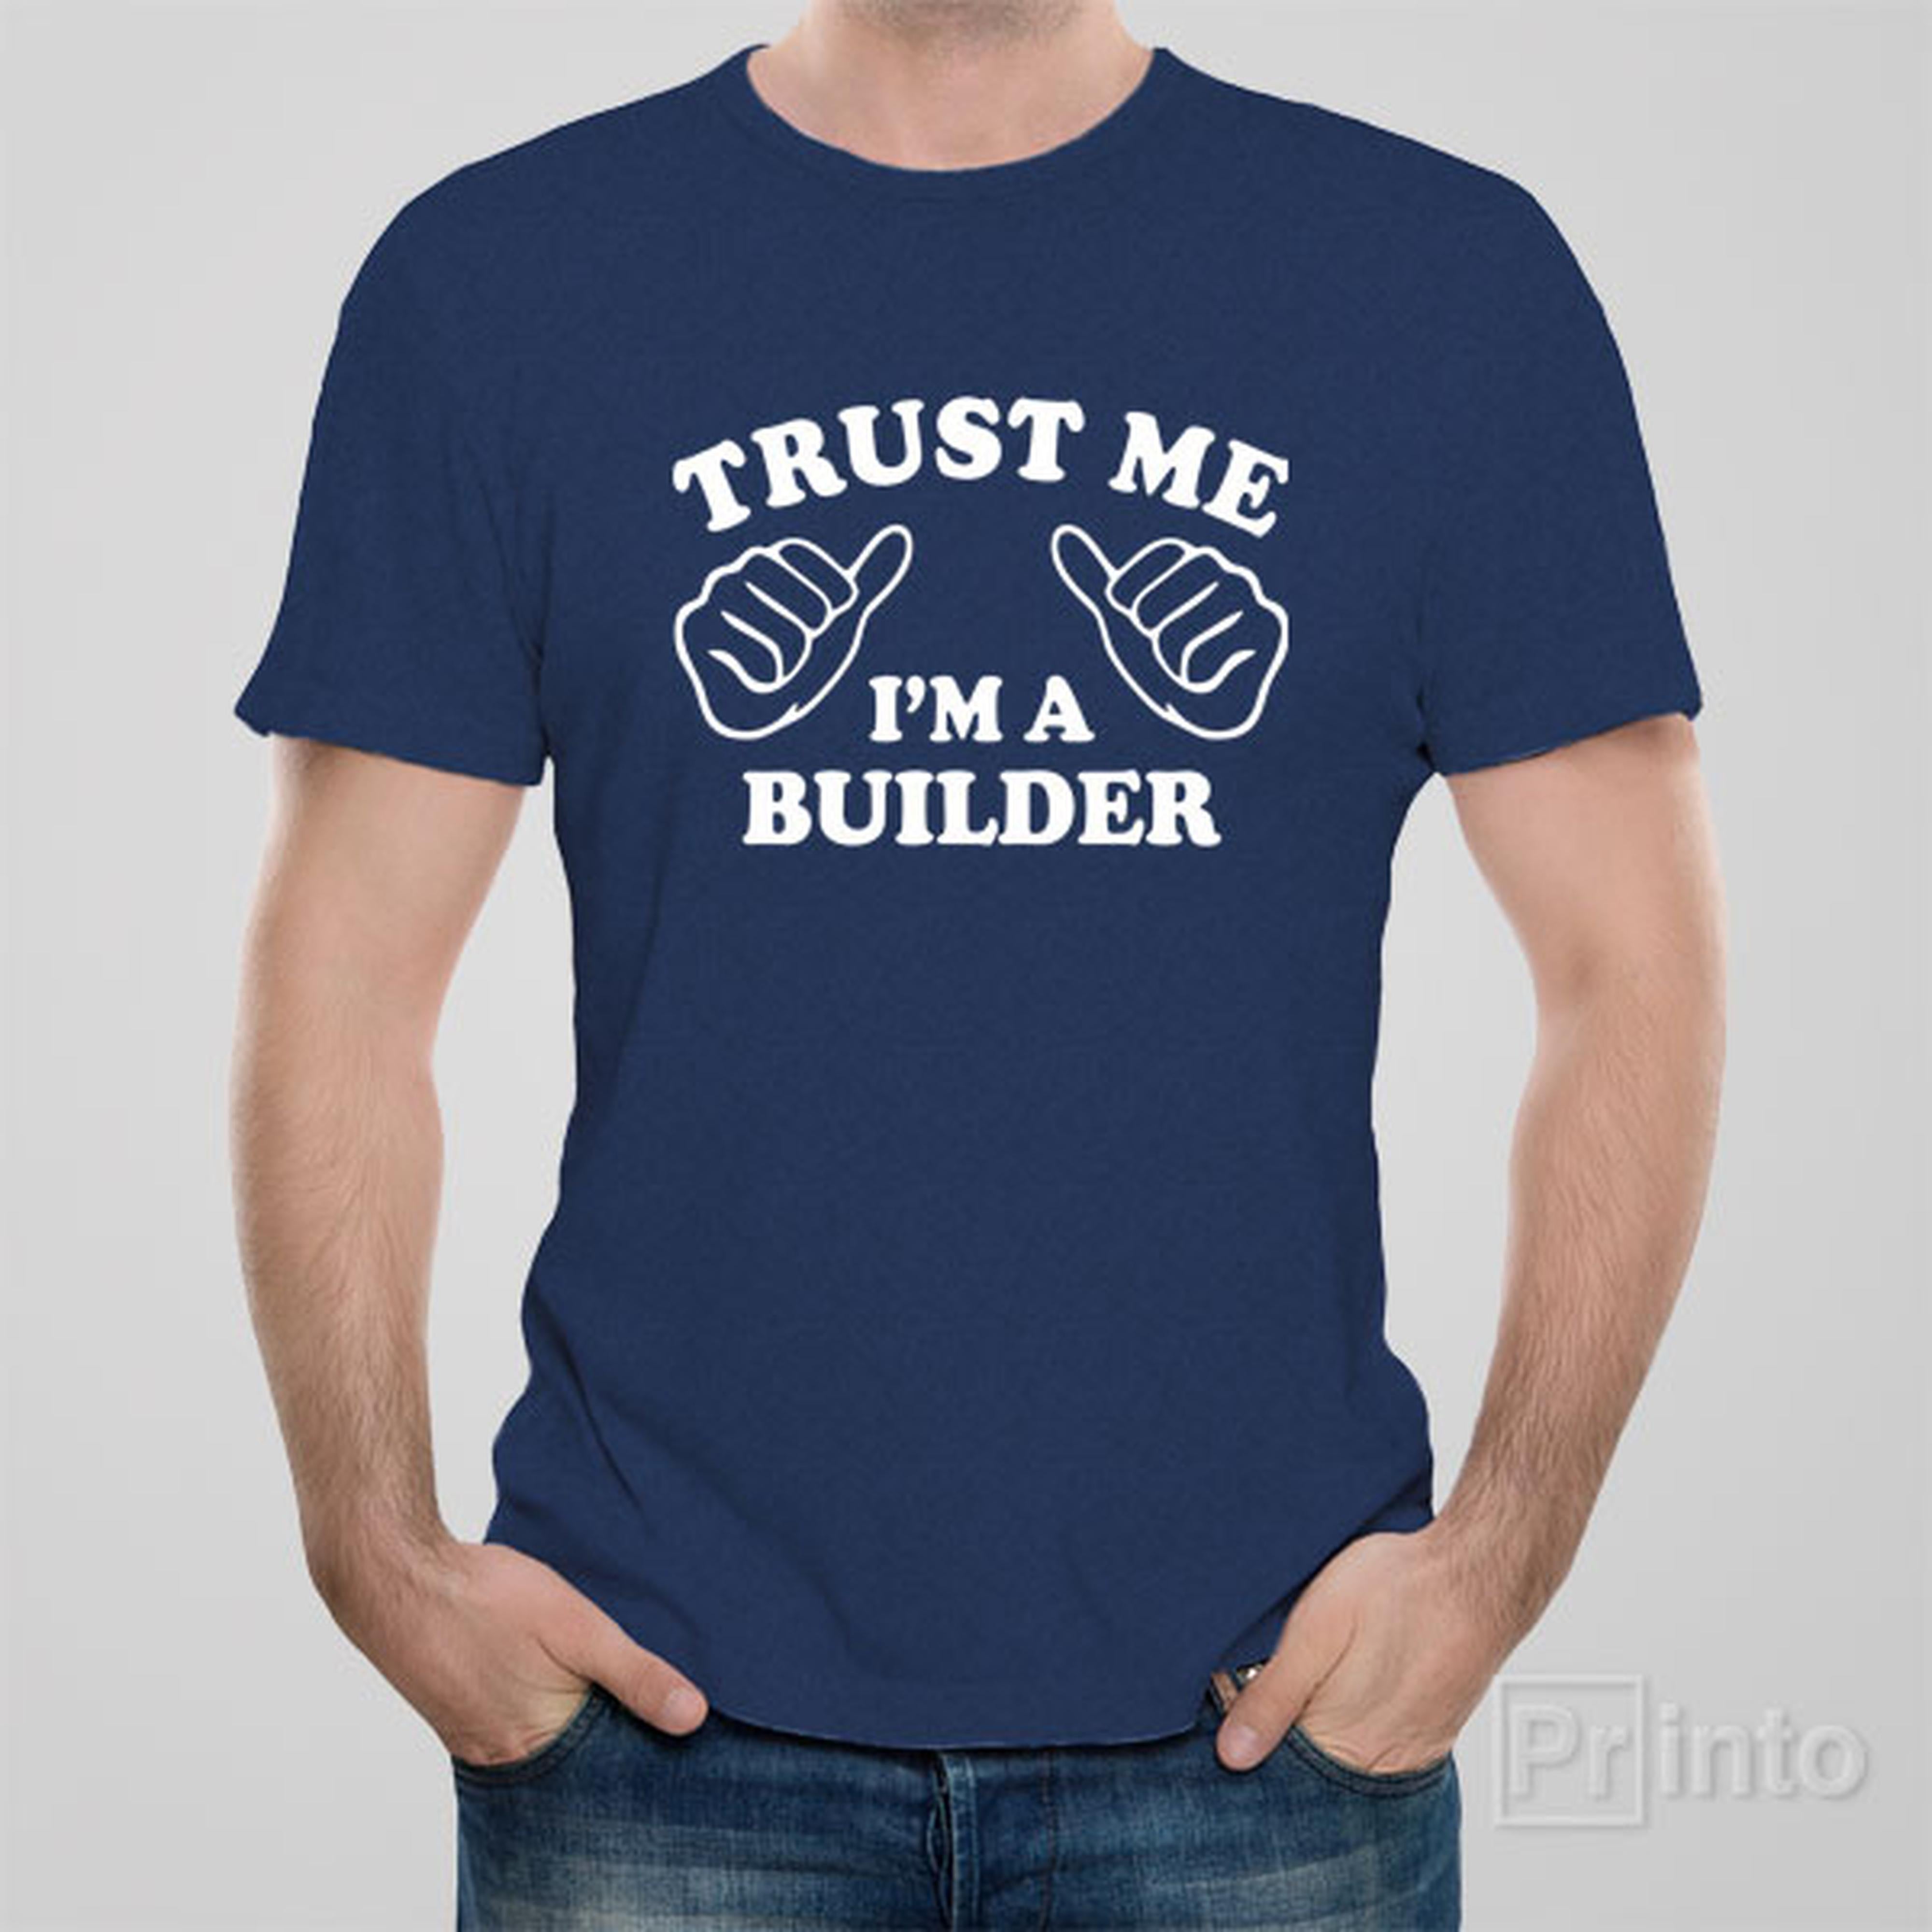 trust-me-i-am-a-builder-t-shirt